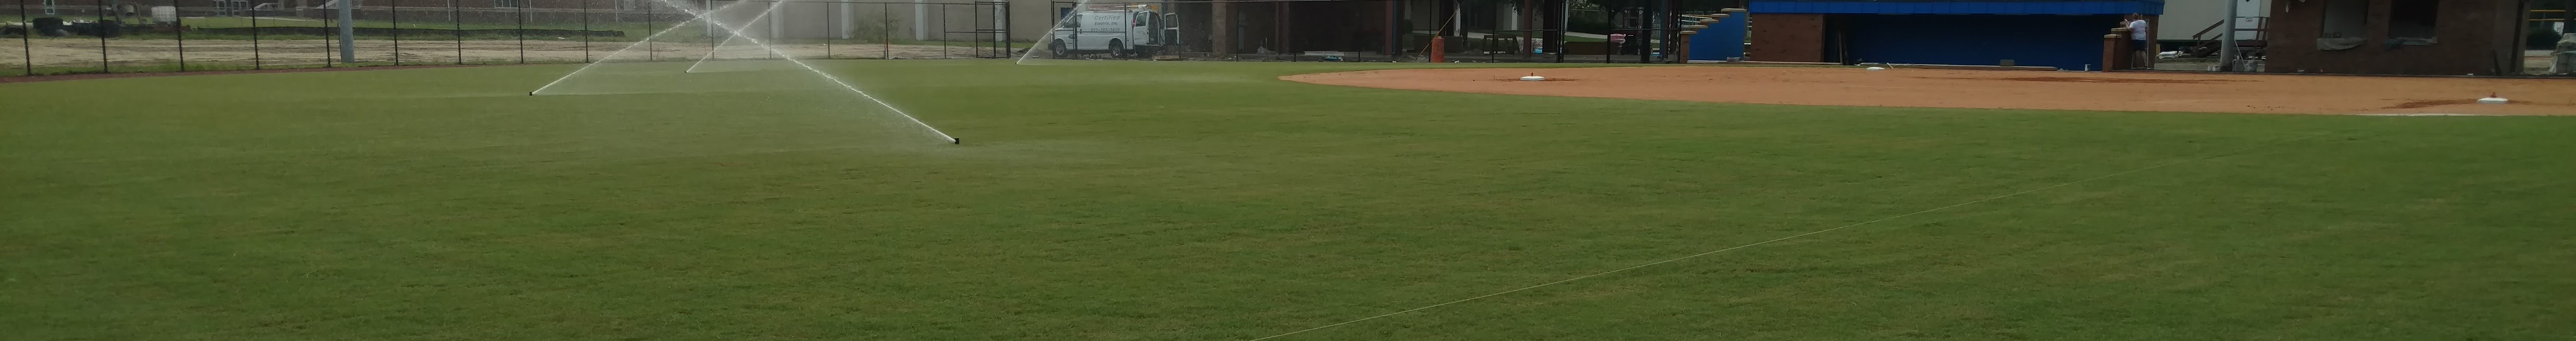 athletic field grass sprinklers